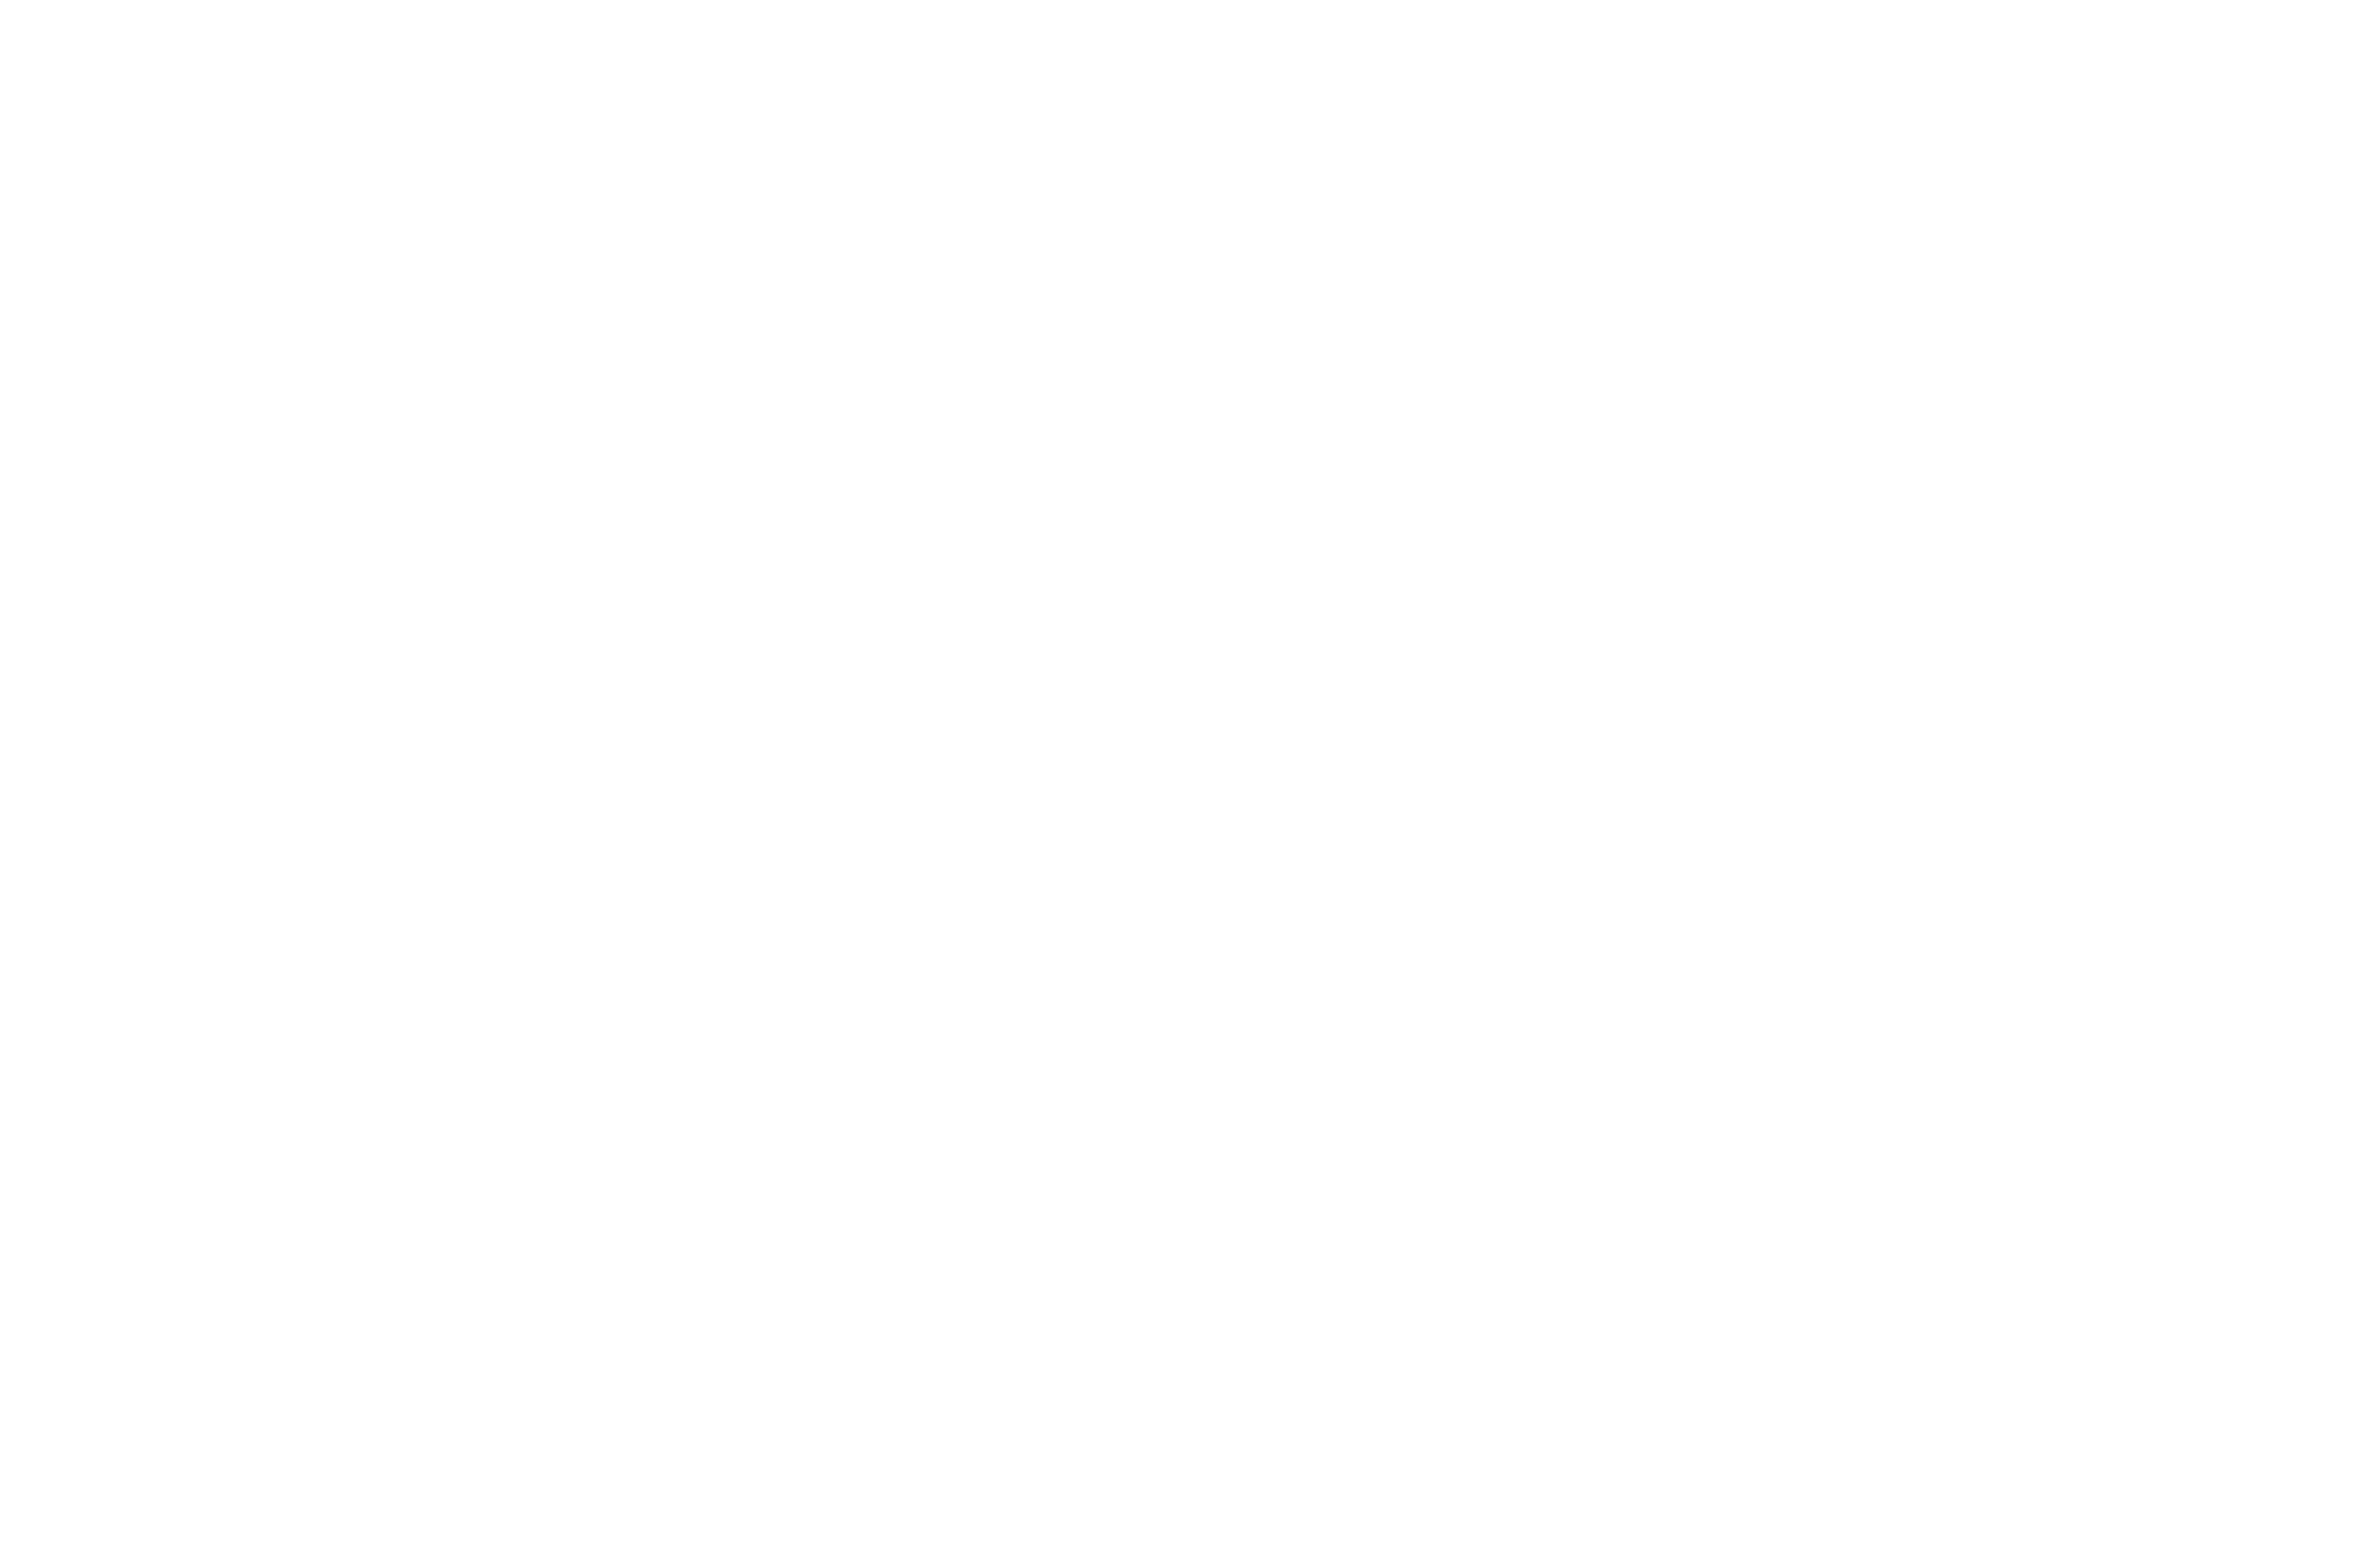 Alfonso Ruiz